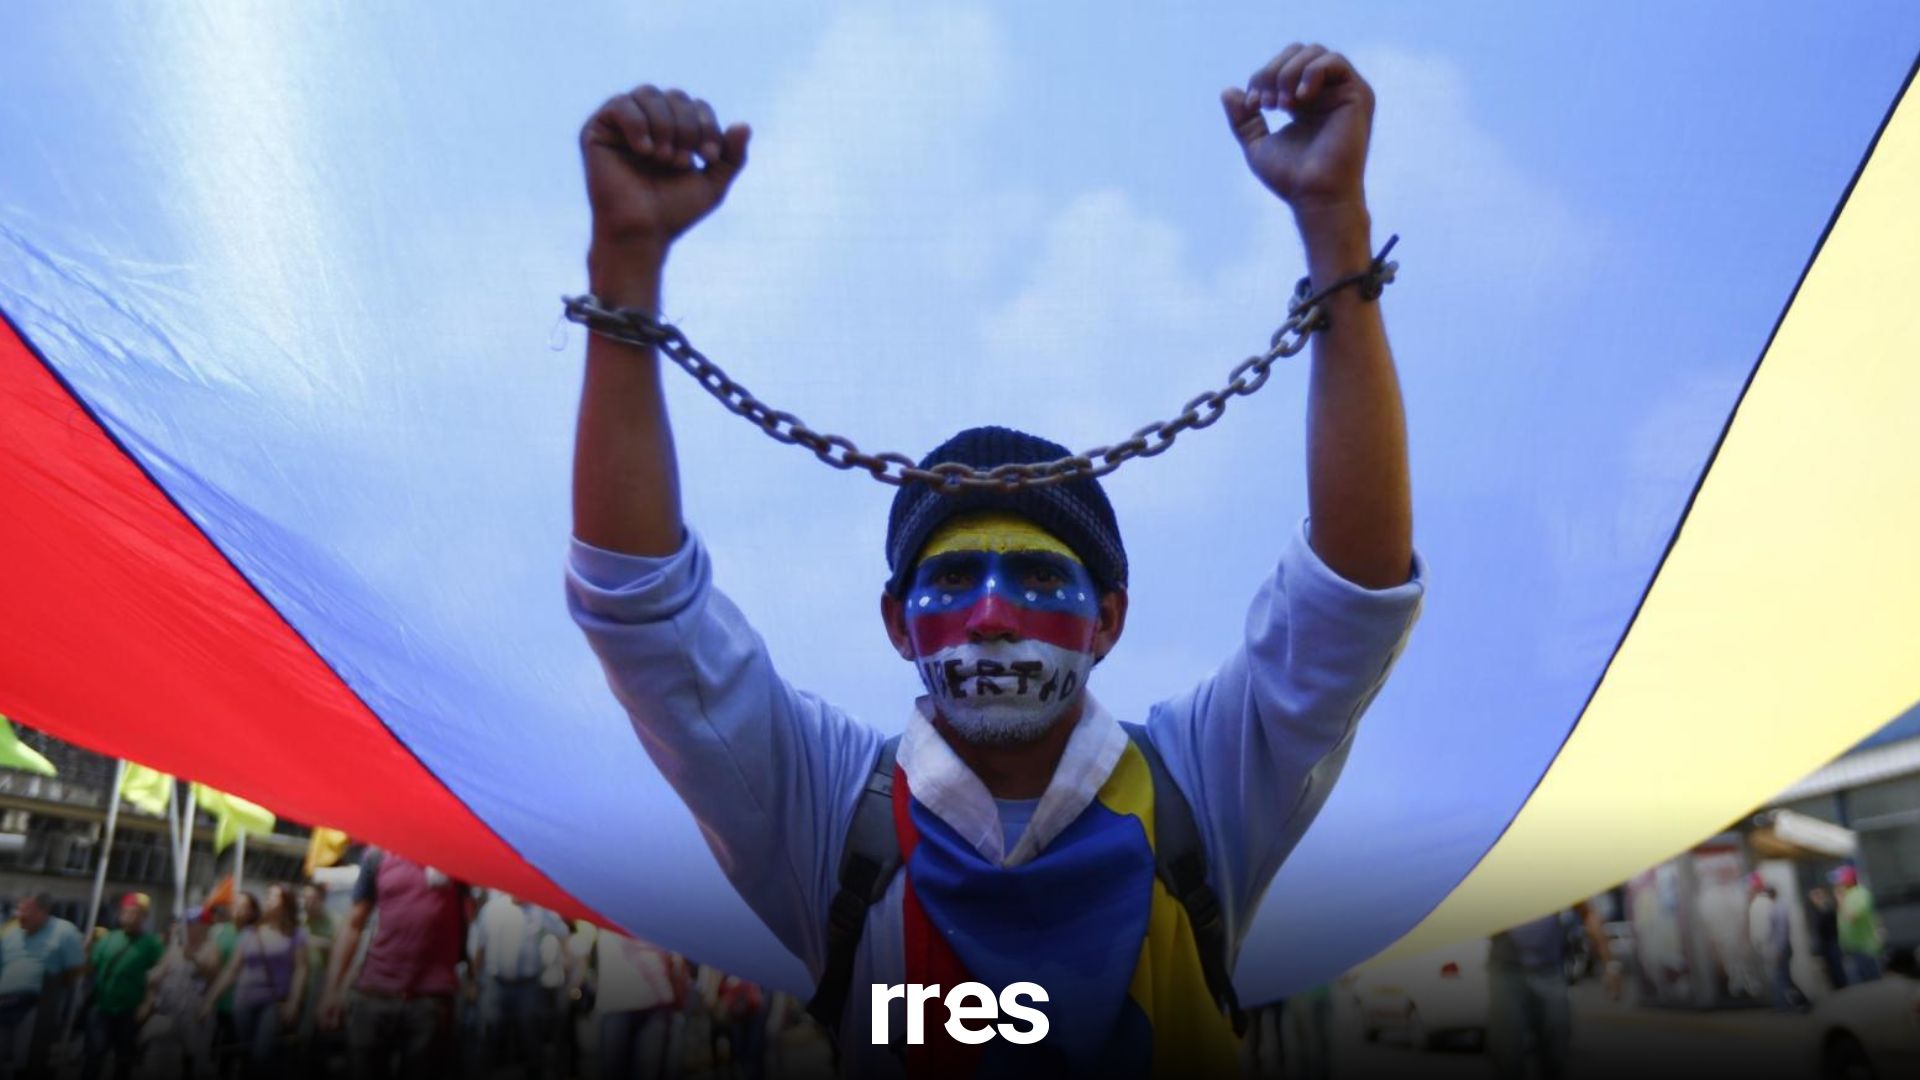 Cepaz: Cada 16 horas una persona u organización fue perseguida o criminalizada en Venezuela